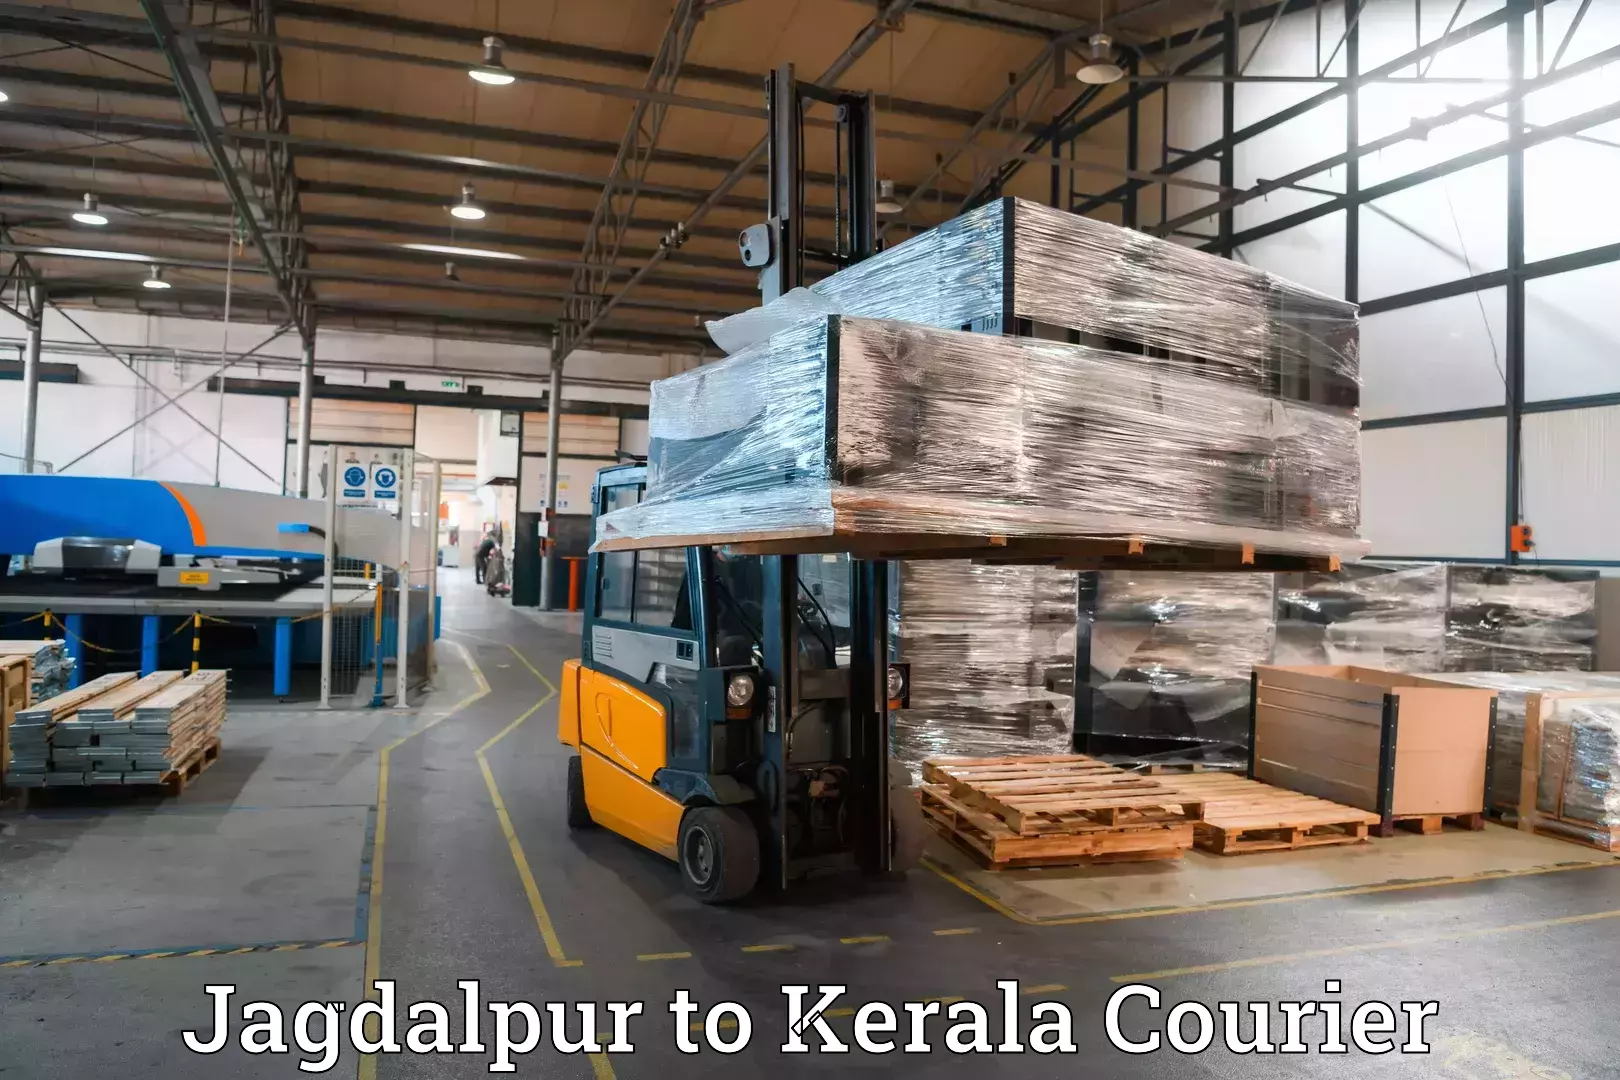 Door-to-door baggage service Jagdalpur to Kottarakkara